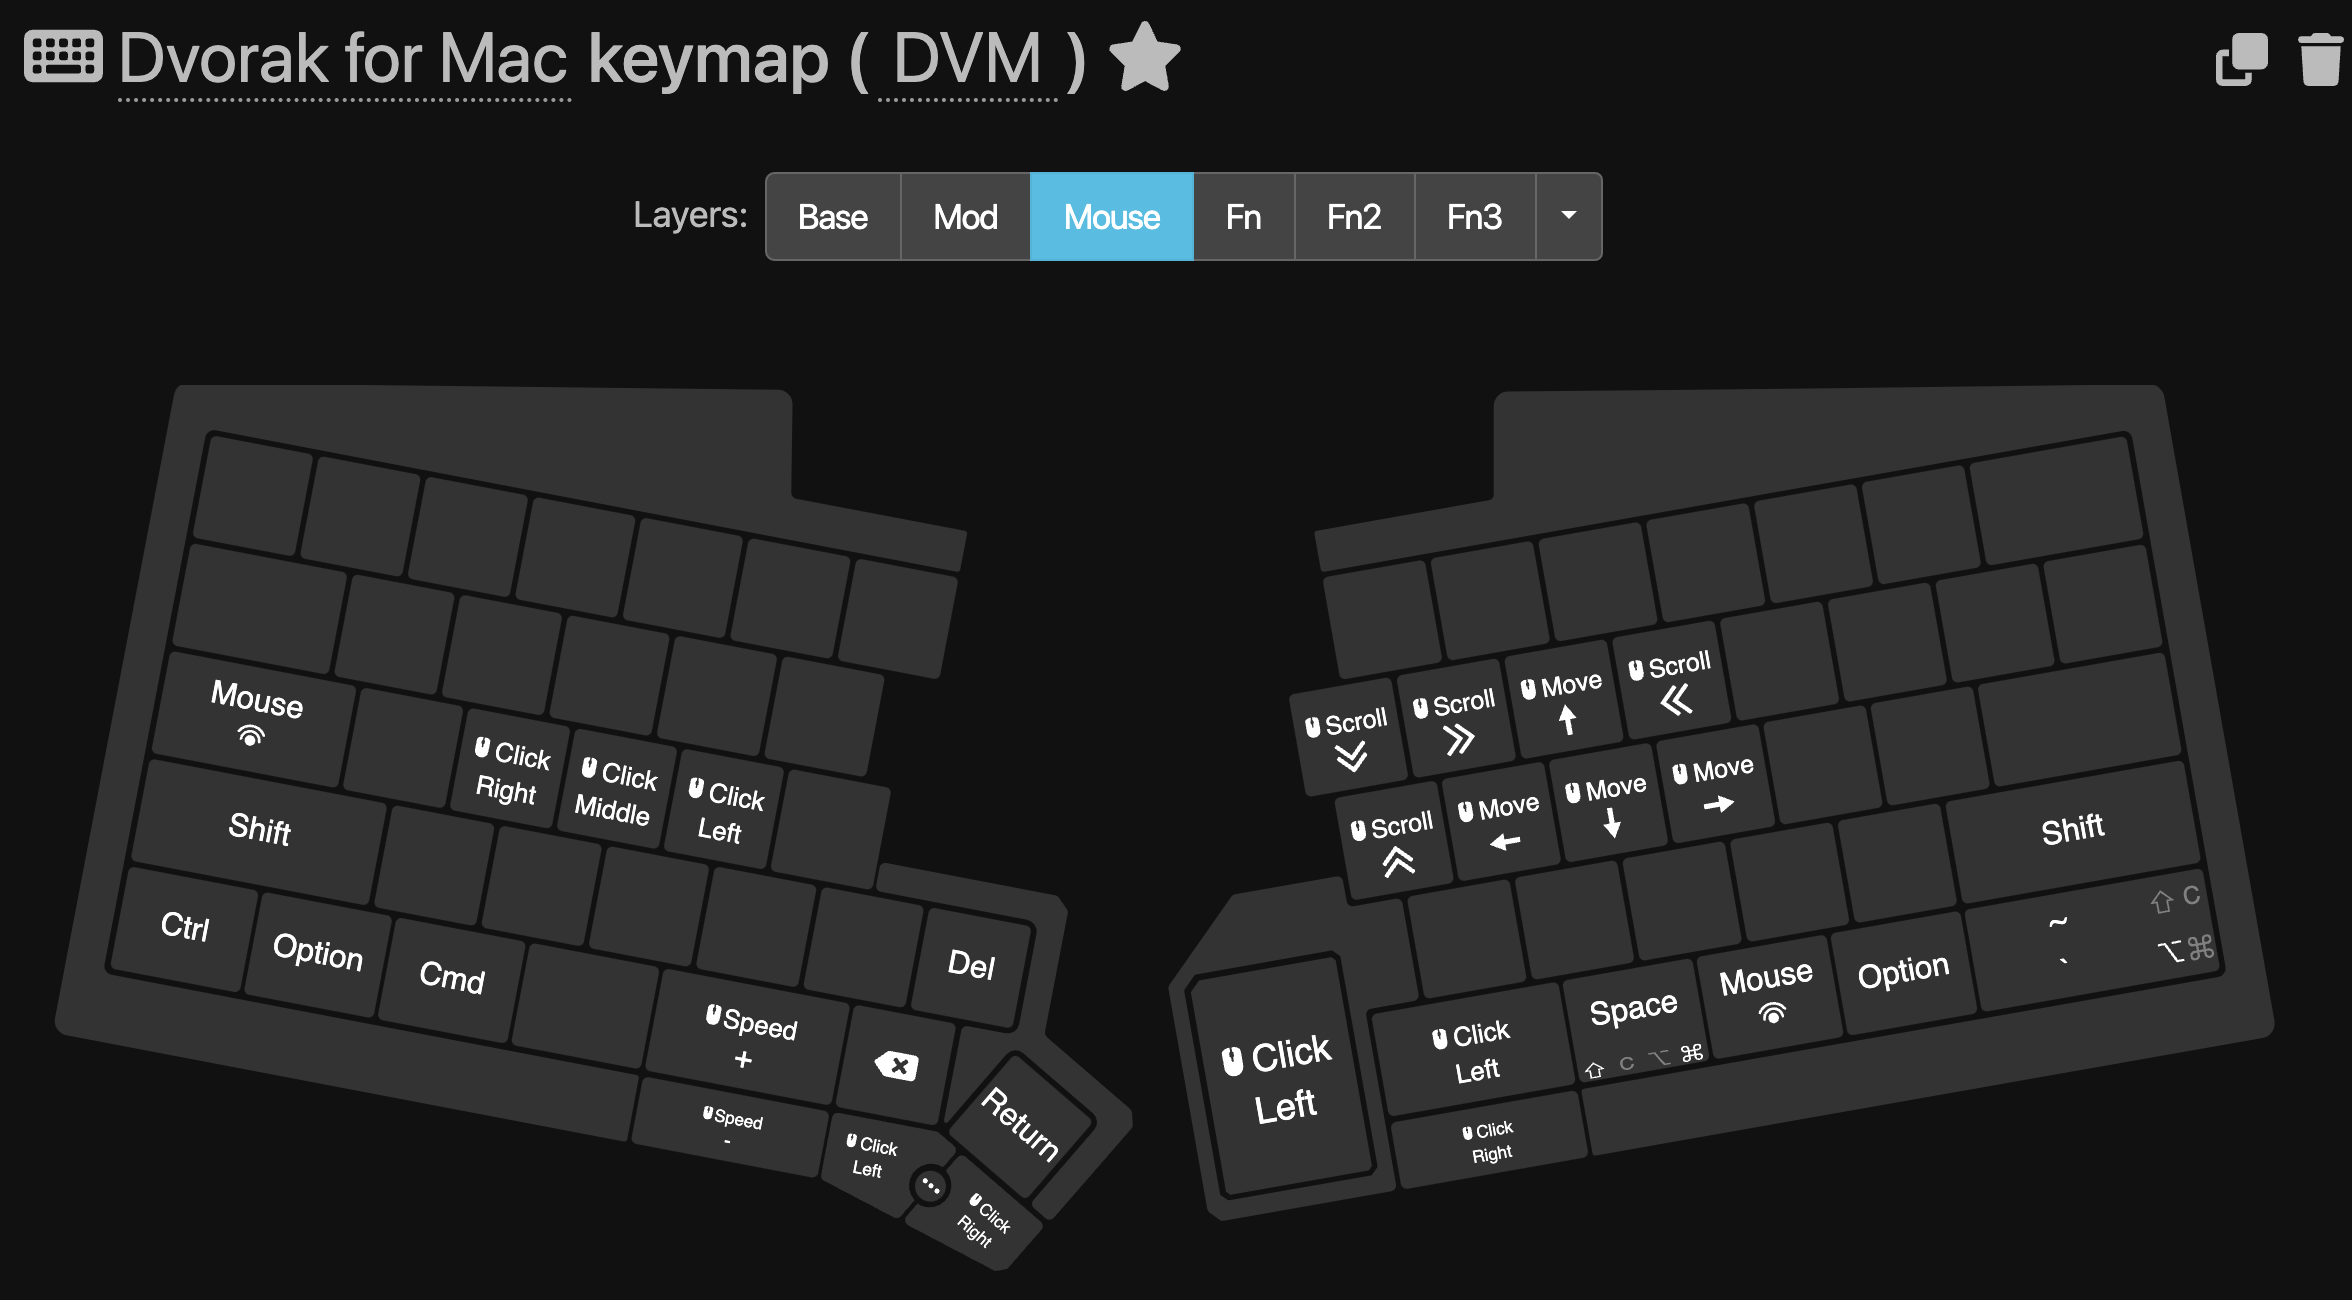 Mouse key layout